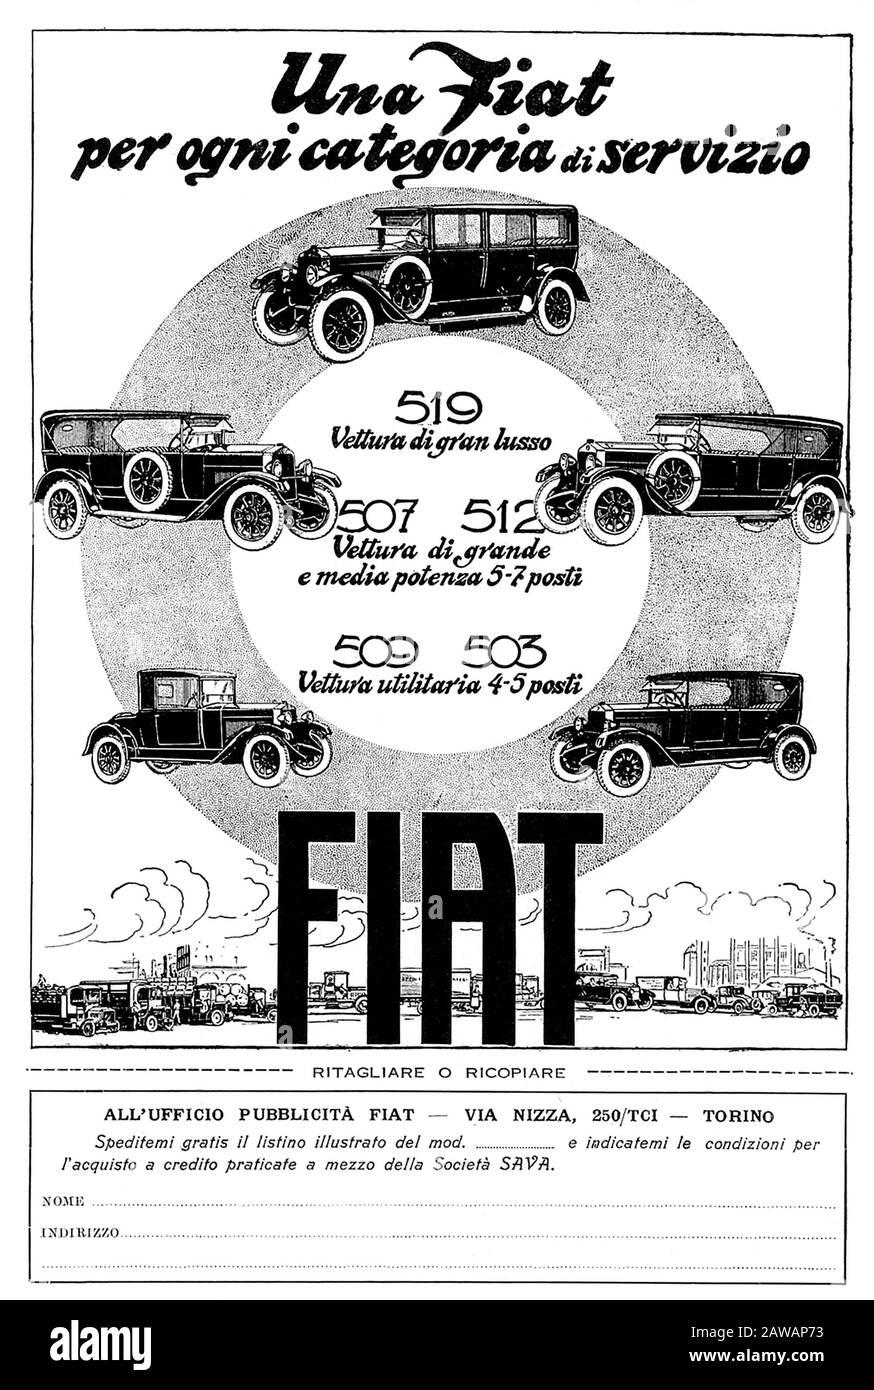 1926 , ITALY : The italian car industry FIAT ( F.I.A.T. Fabbrica Italiana Automobili Torino ) advertising for FIAT 509 , 503 , 507 , 512 and 519 model Stock Photo